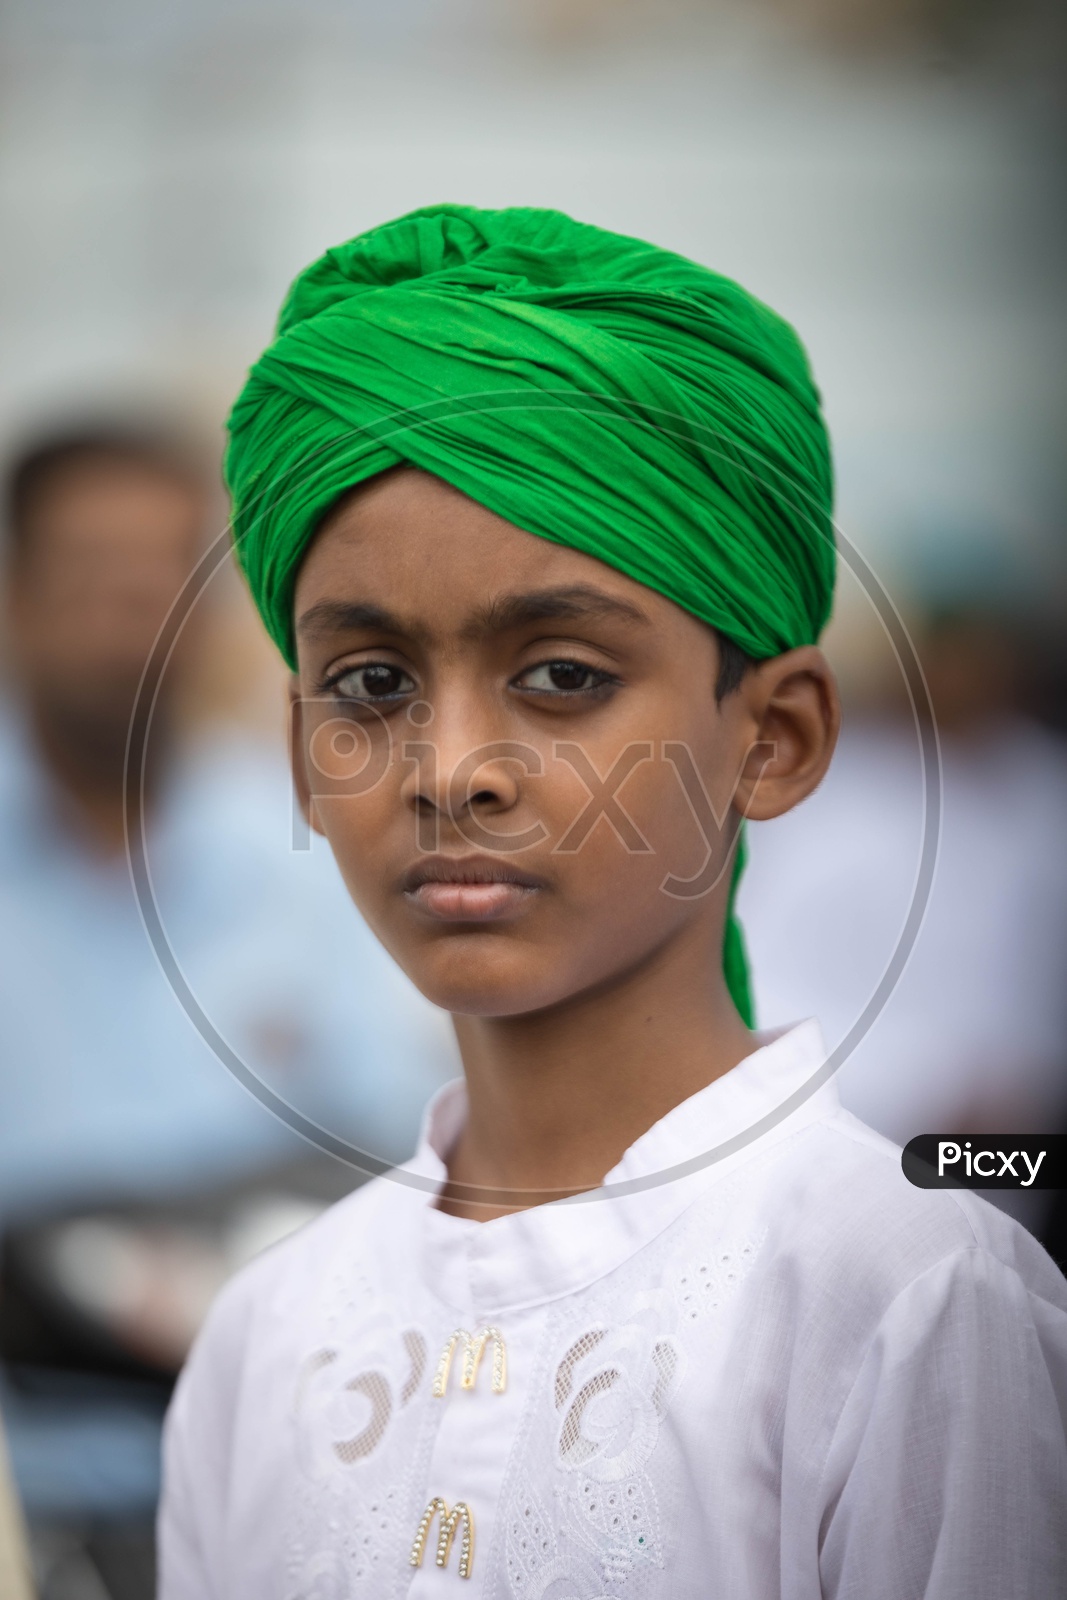 Portrait of a muslim boy